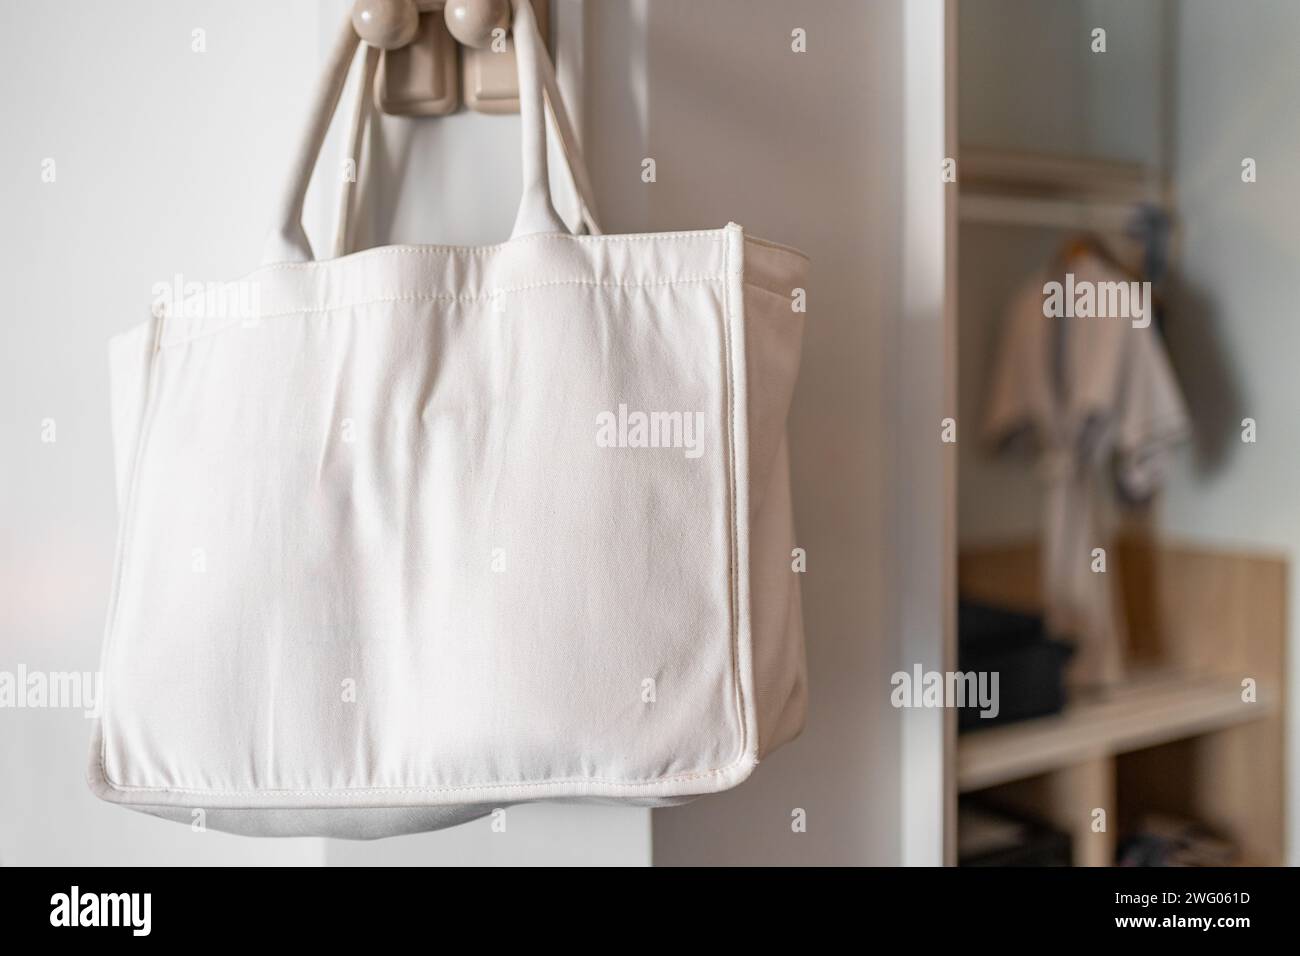 Swivel Clip for Bag Making - Bag Strap Clip/Handbag Snap Hook - Antique  Bronze, Silver, Rose Gold - Dot To Dot Studio